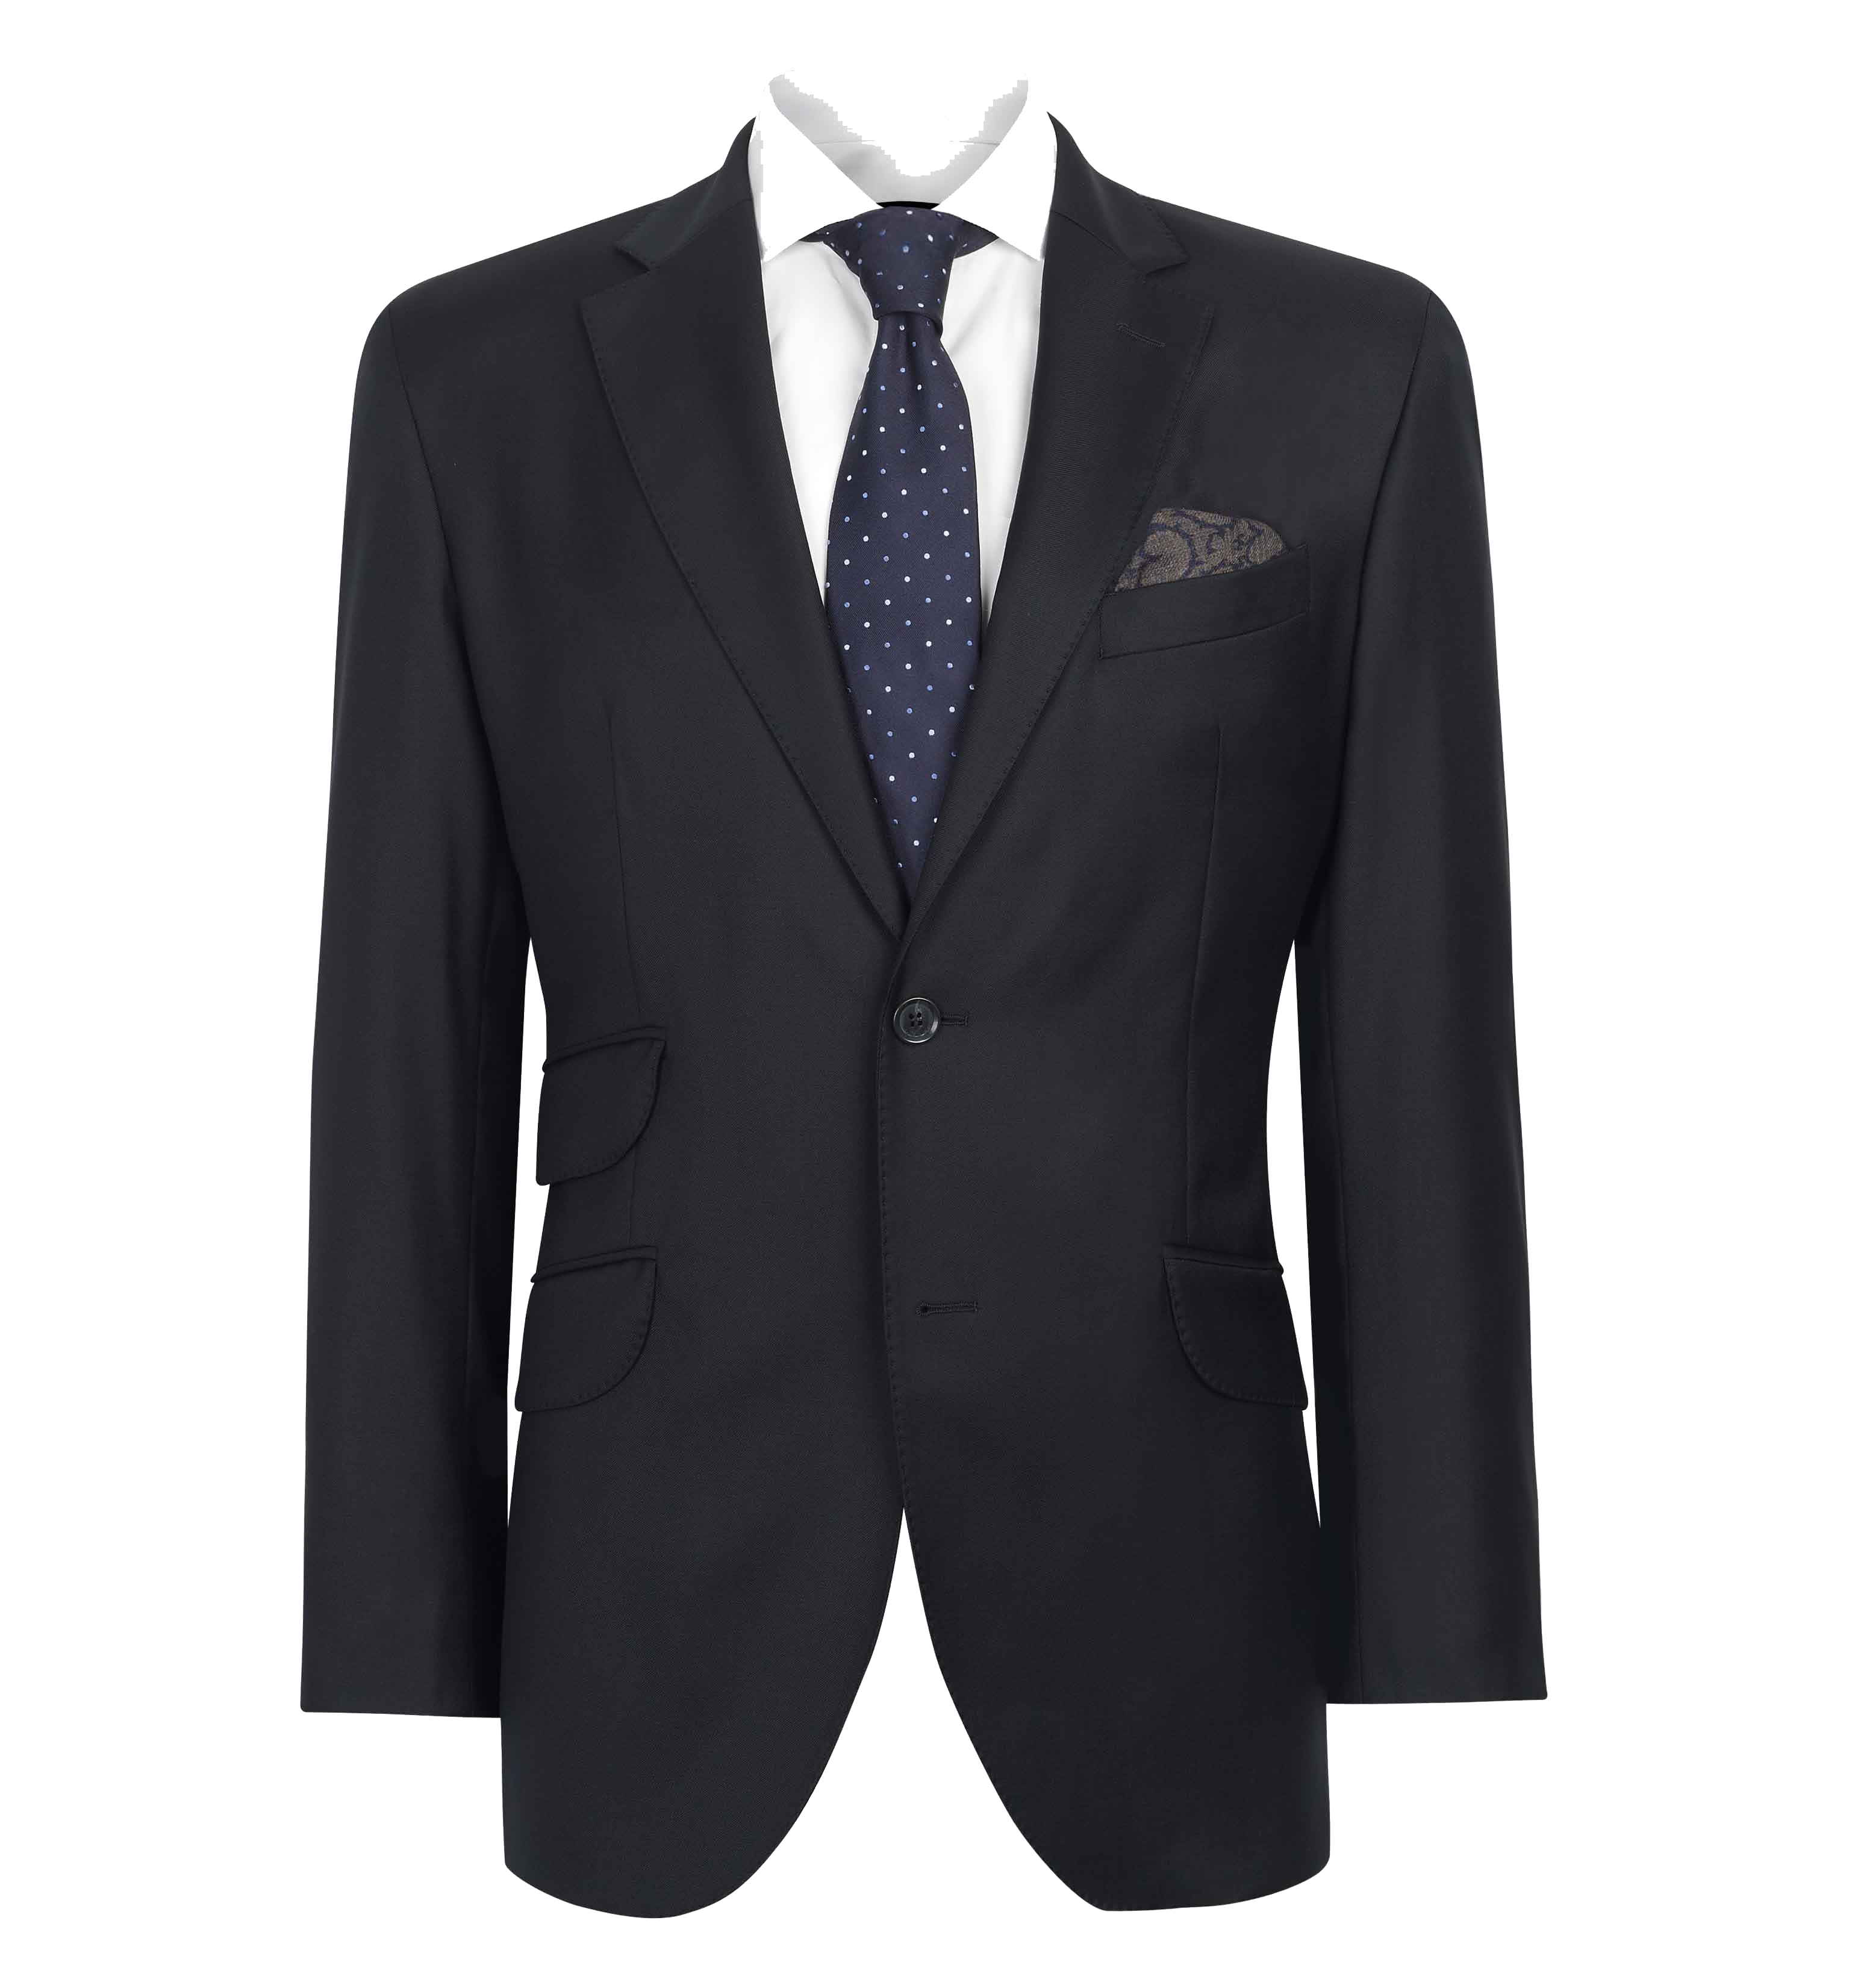 Suit Png Image - Suit, Transparent background PNG HD thumbnail